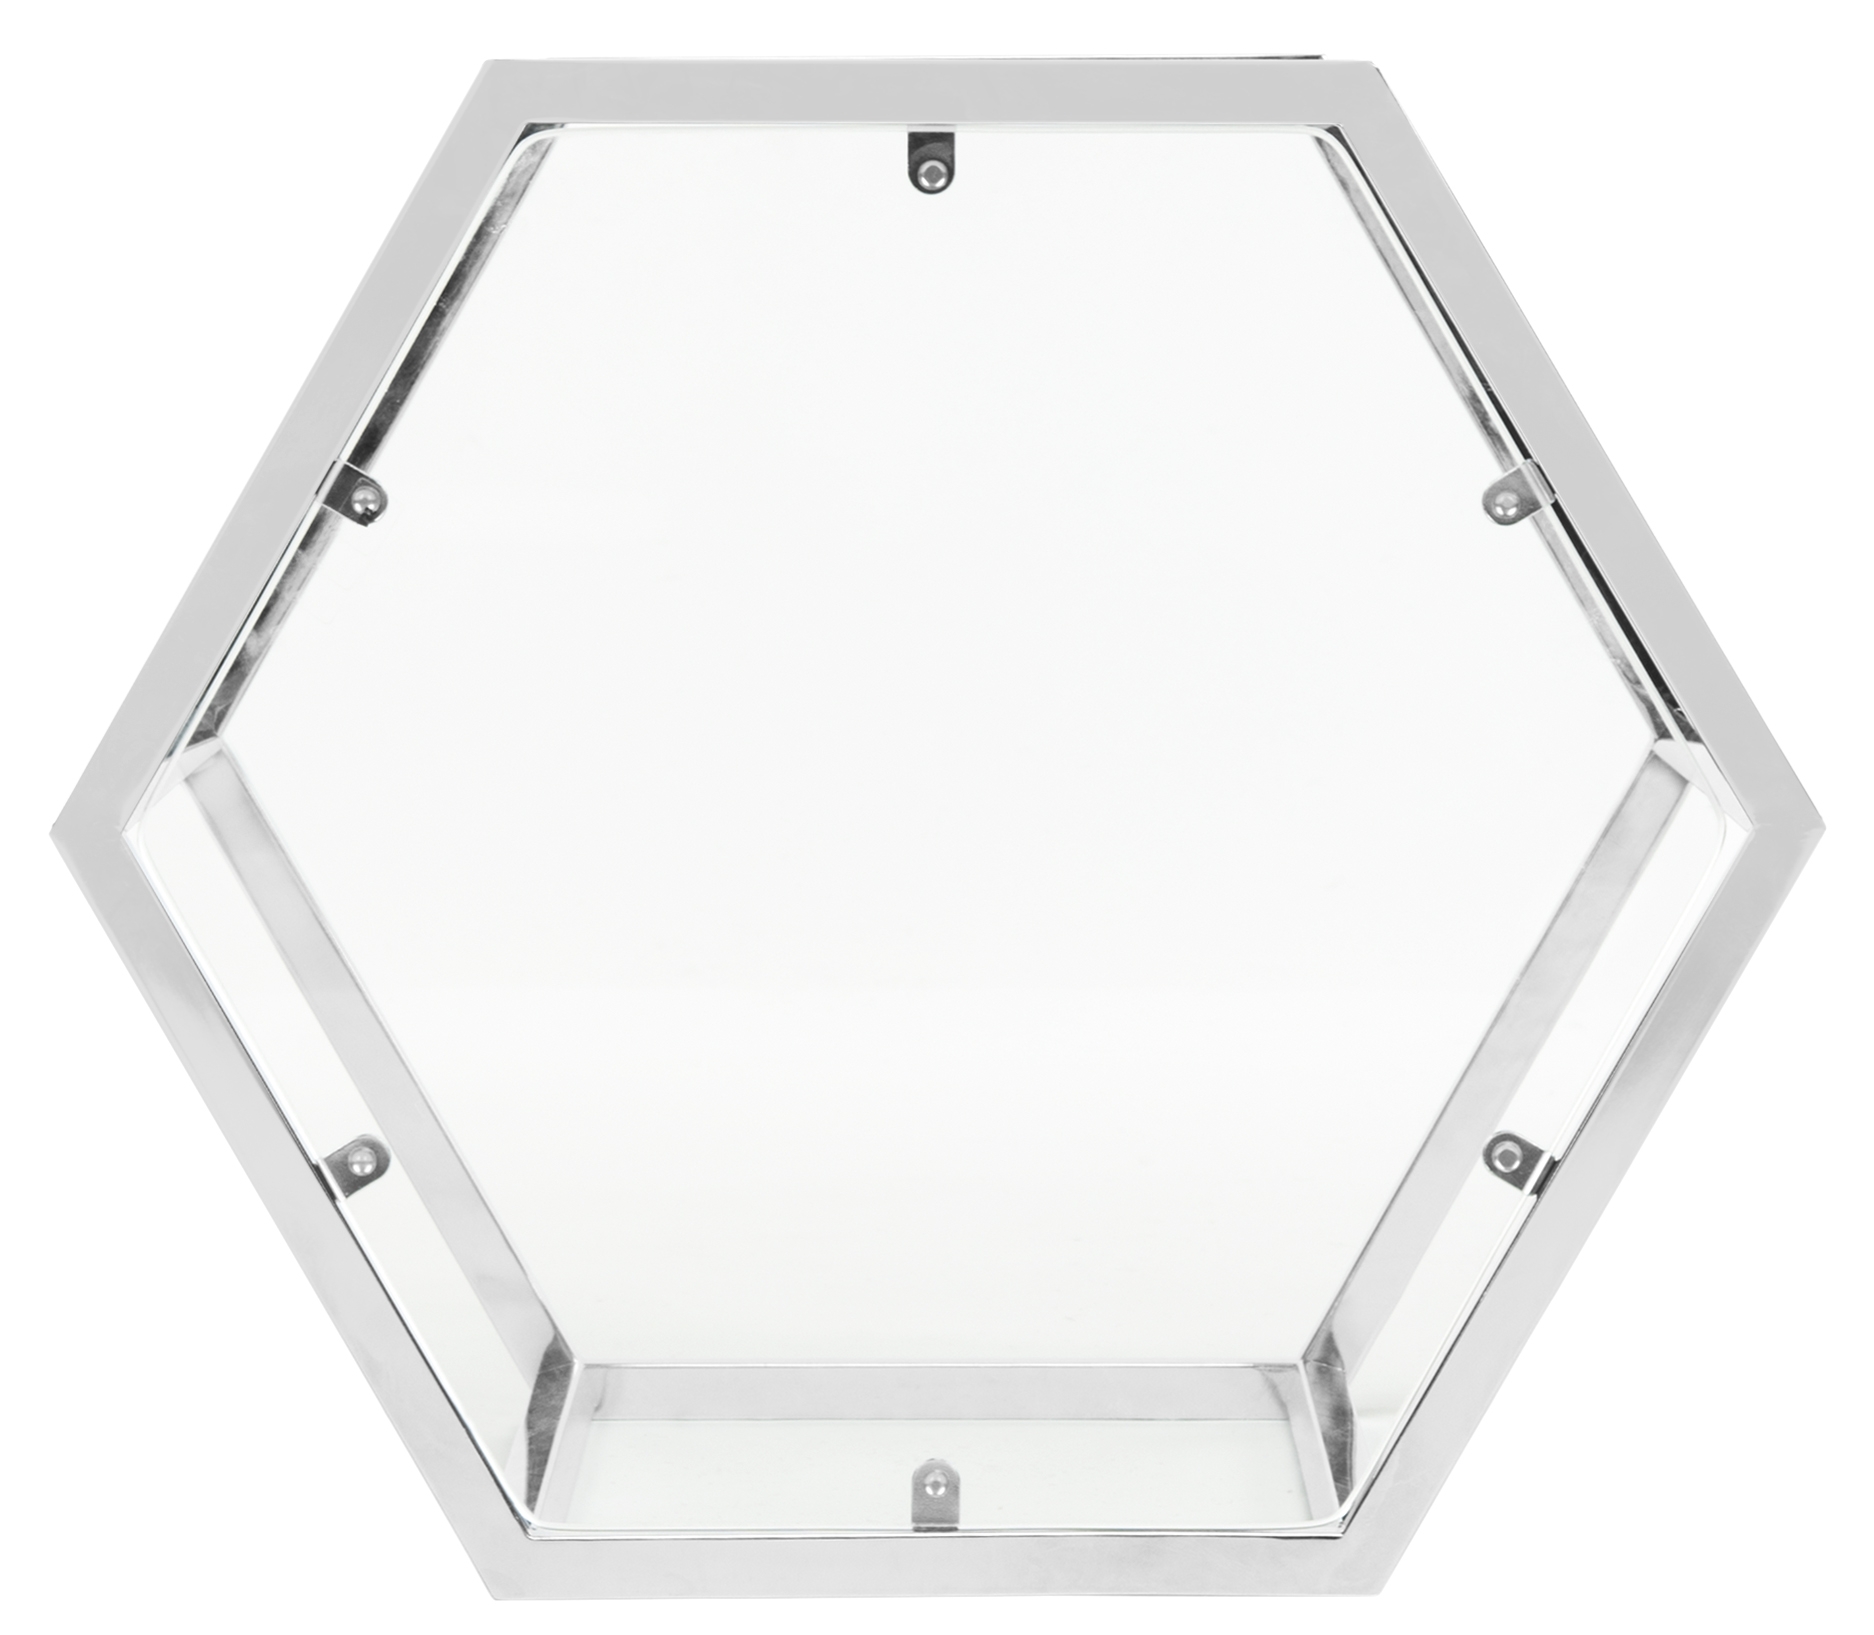 Teagan Glass End Table - Chrome - Arlo Home - Image 4